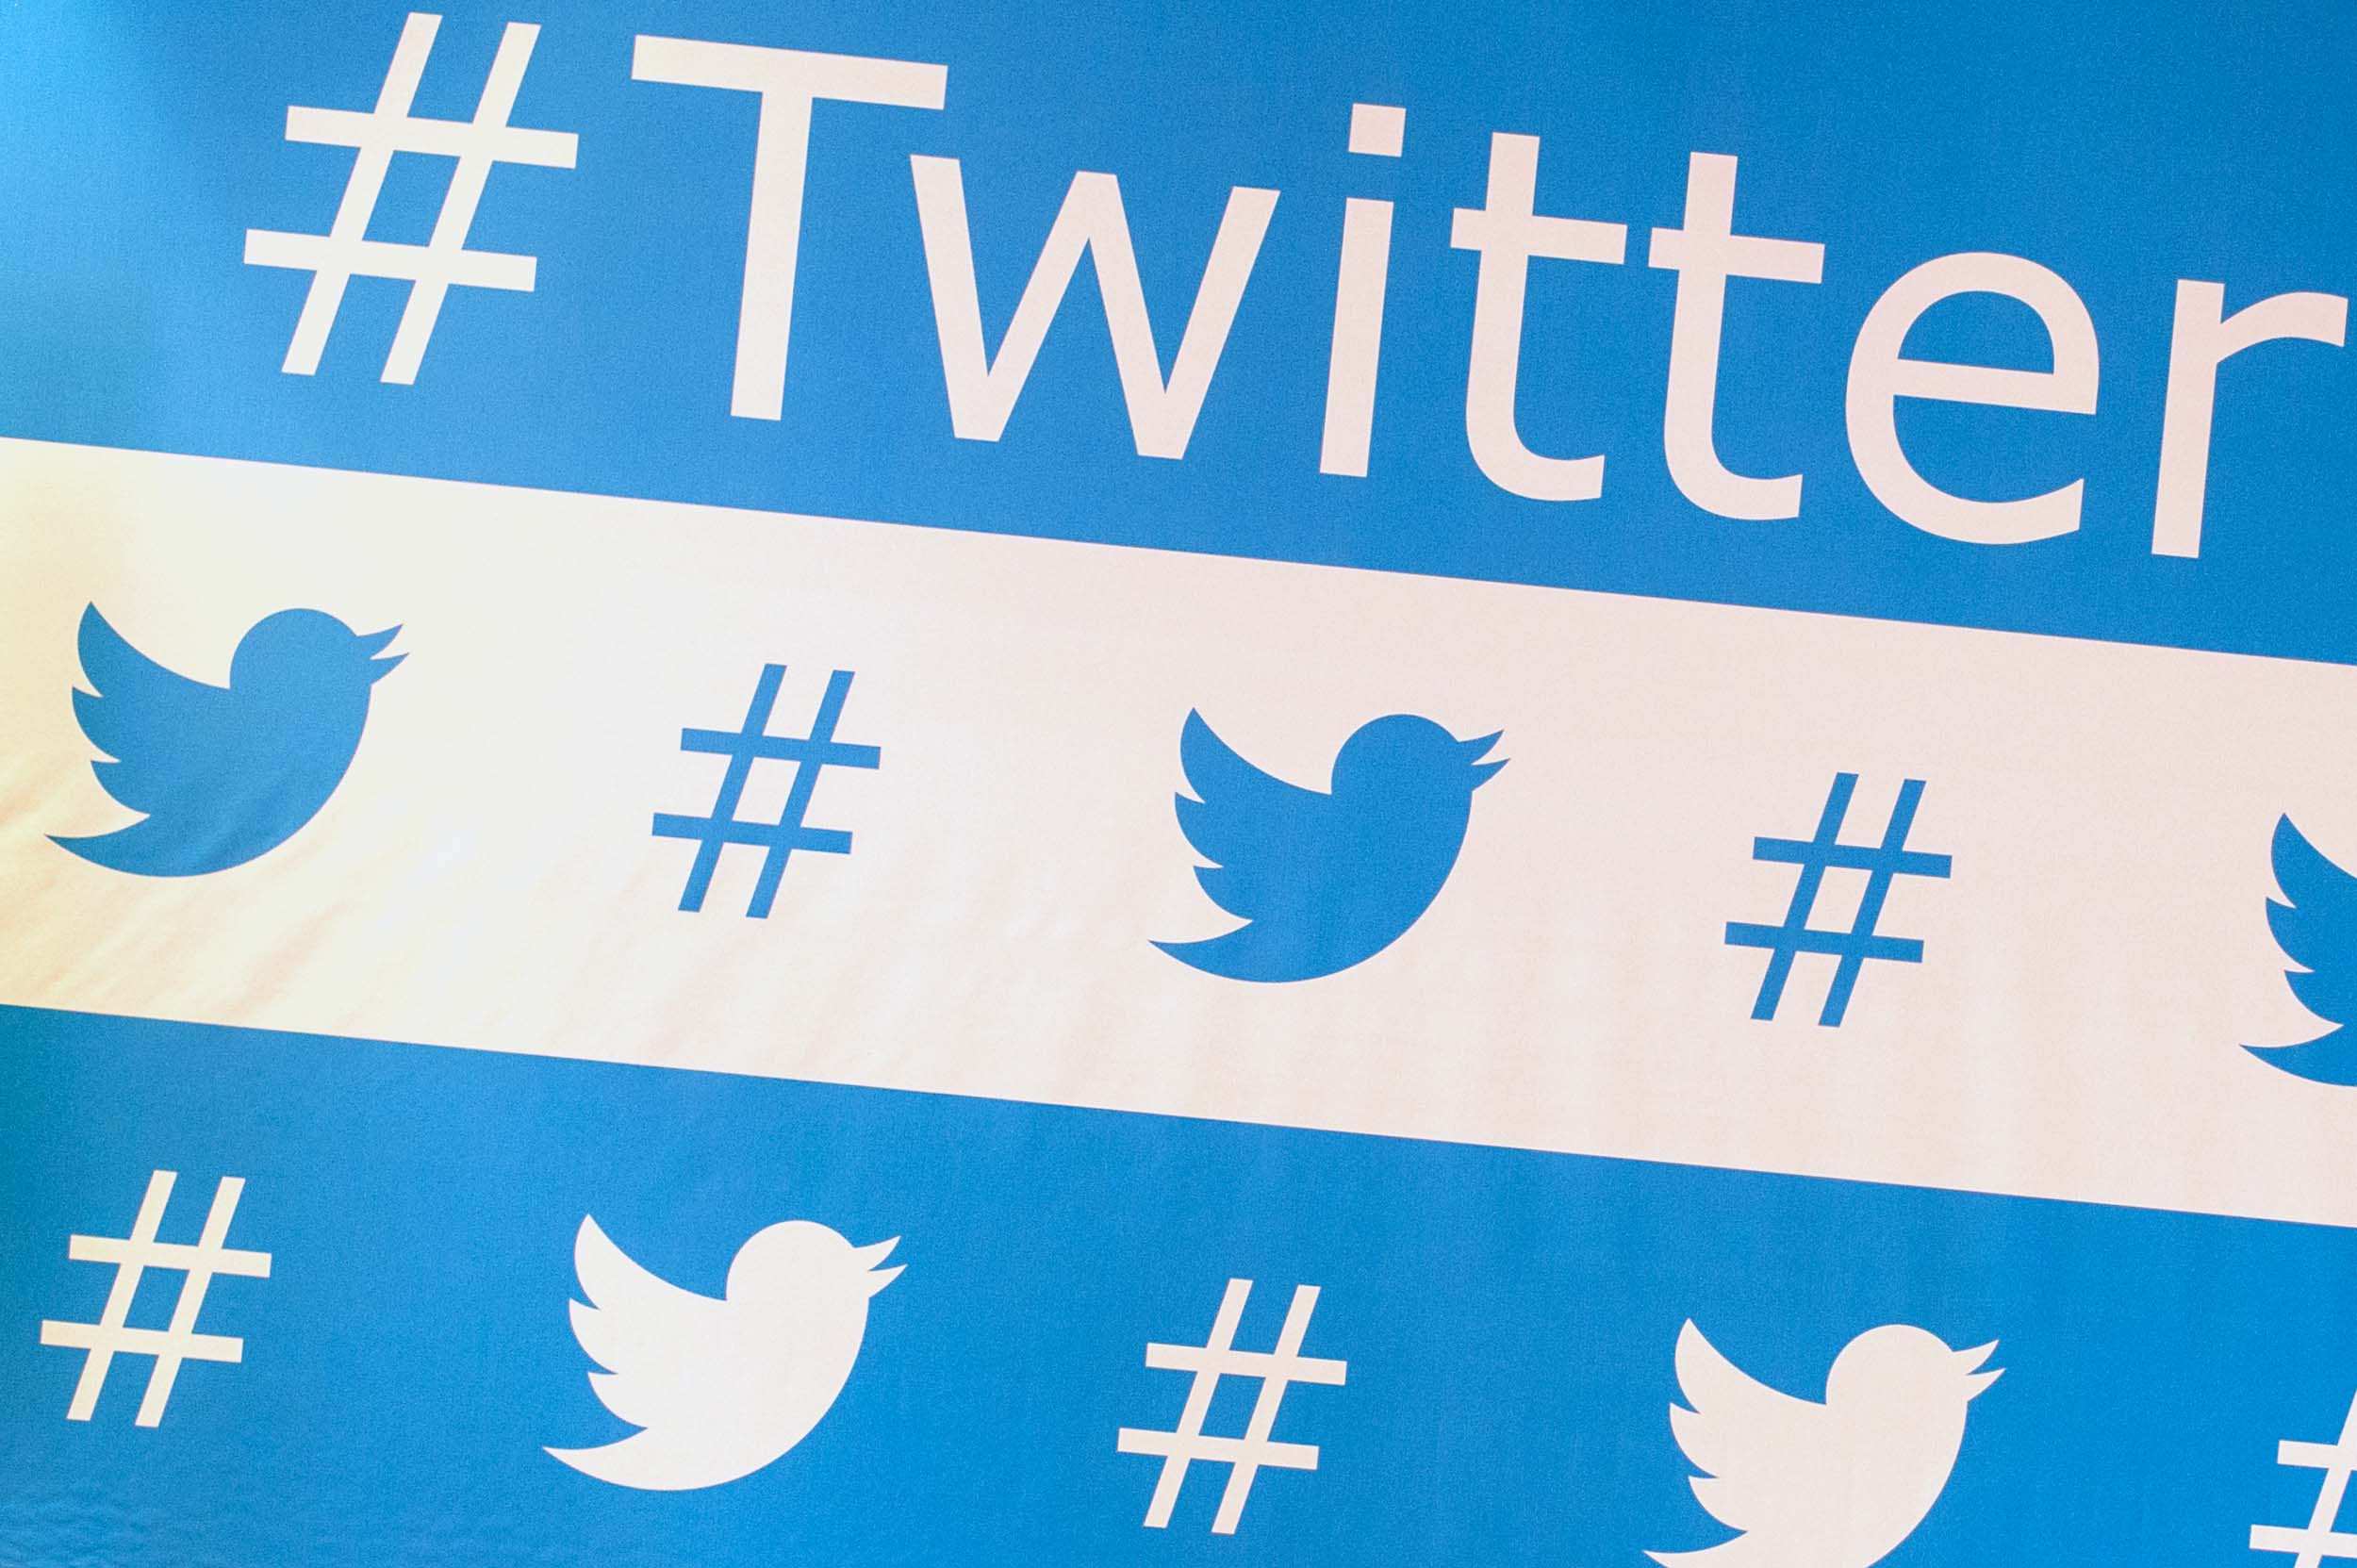 Новый генеральный директор Twitter массово увольняет сотрудников